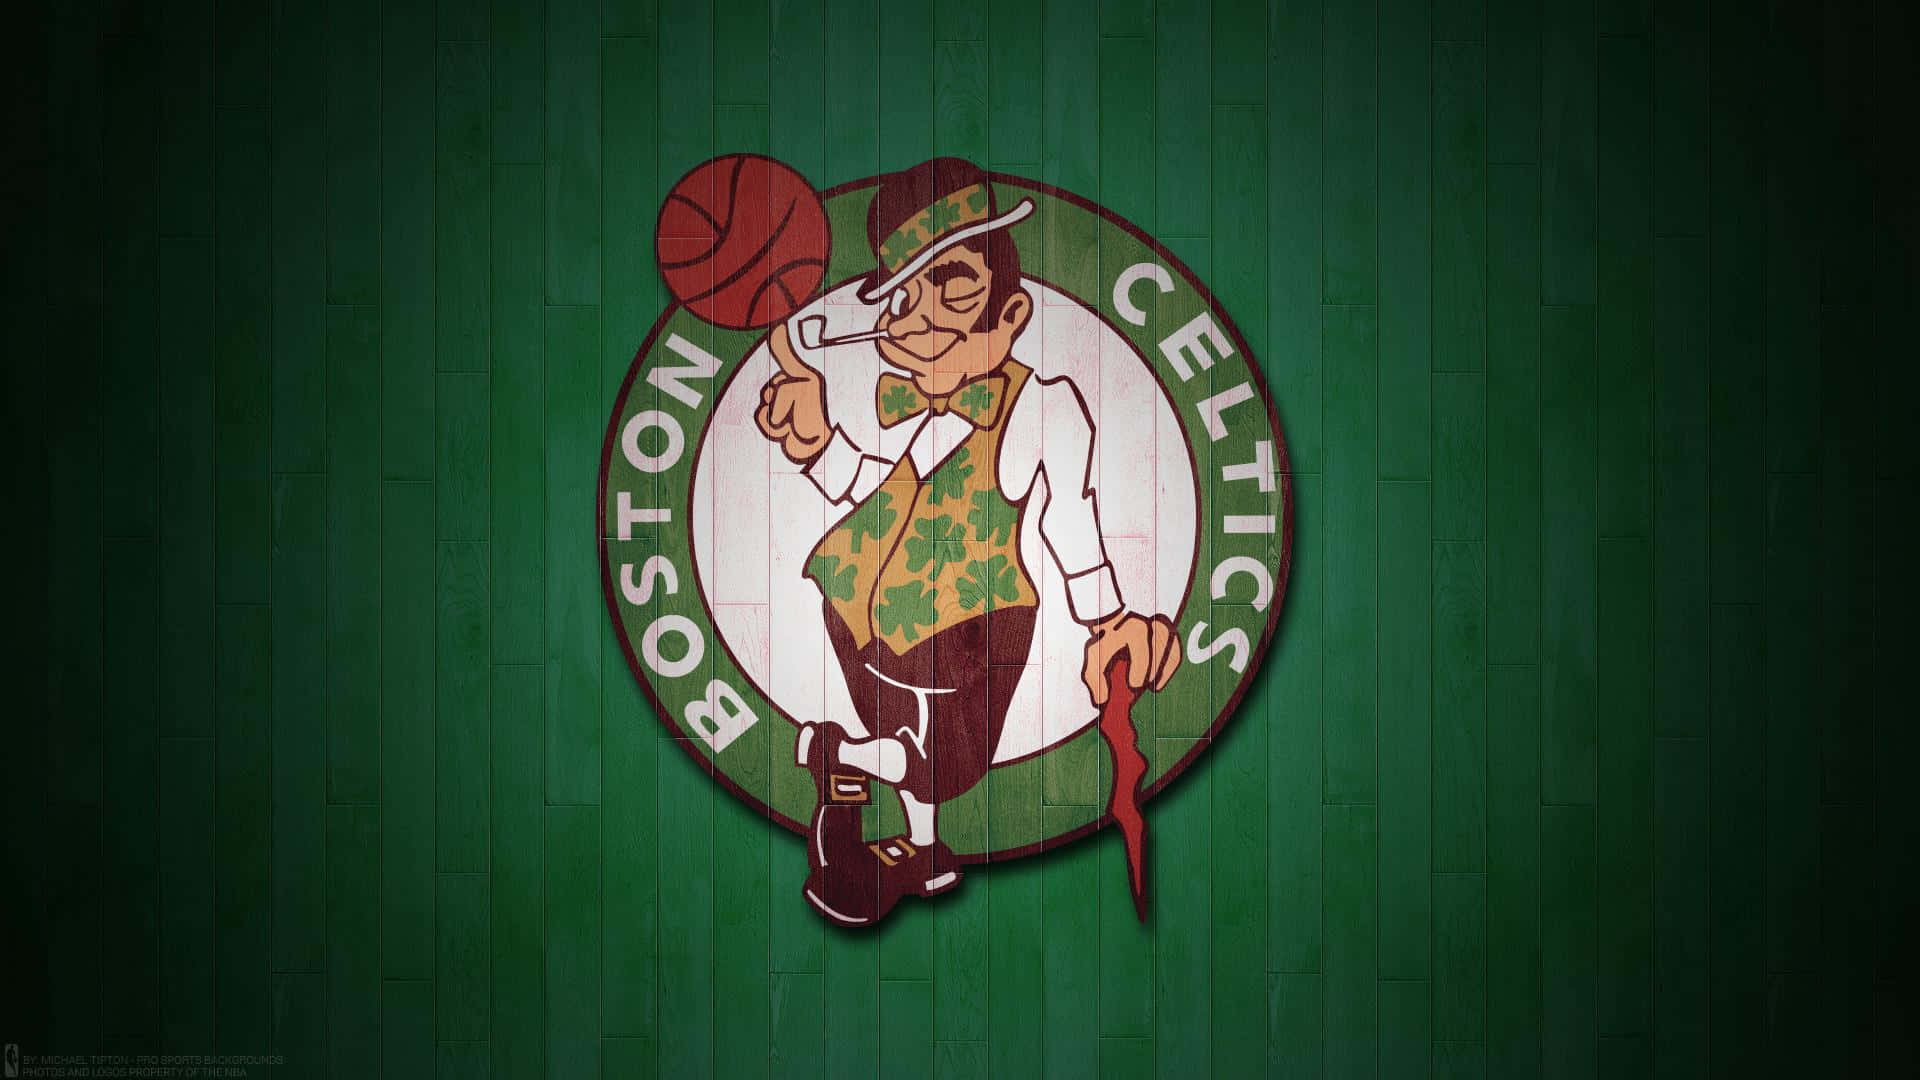 Nba Teams Celtics Wallpaper